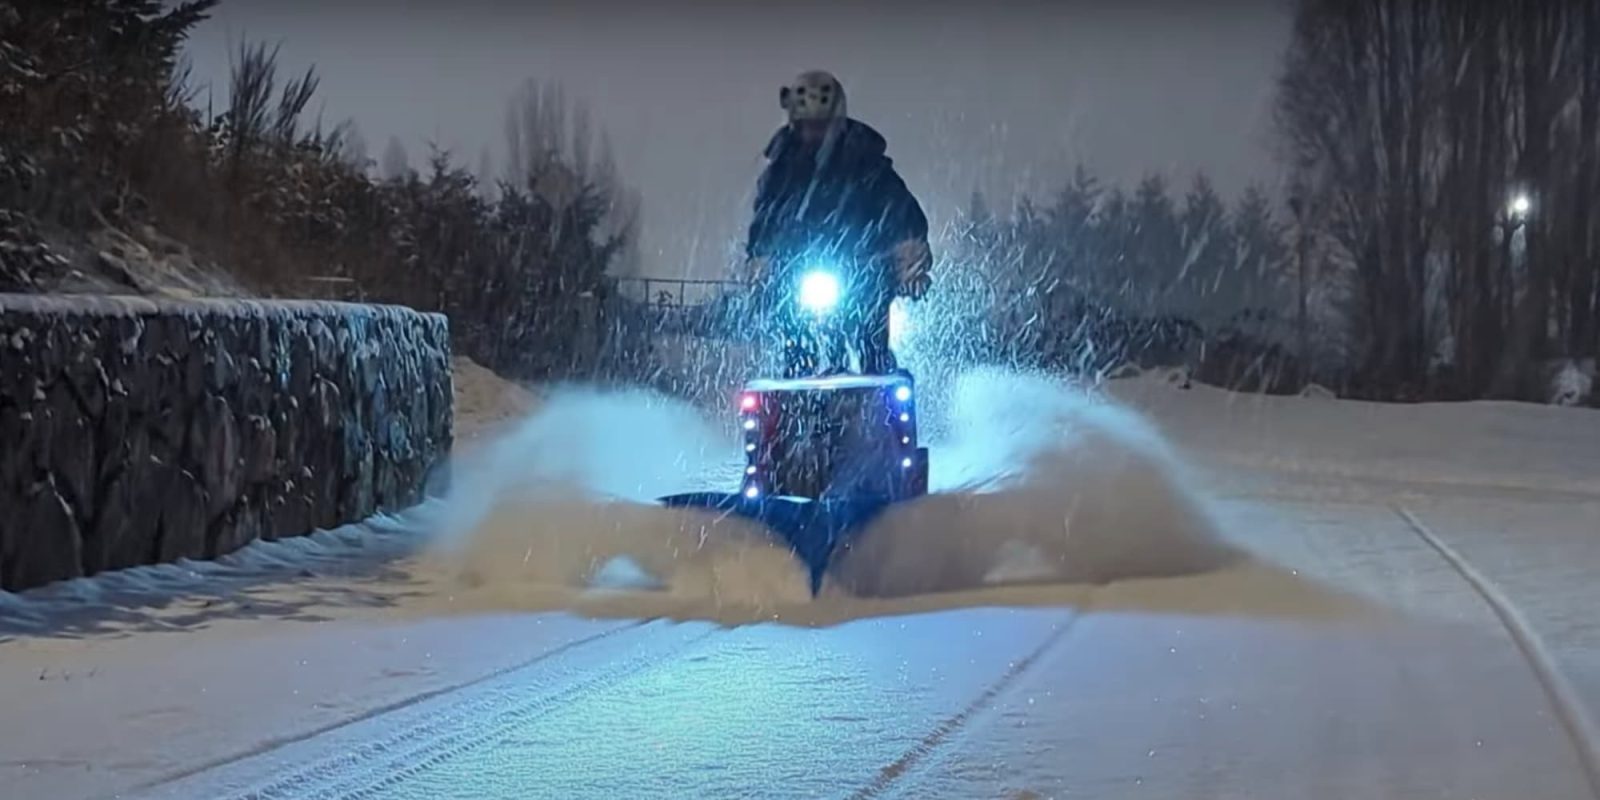 e-bike snow plow